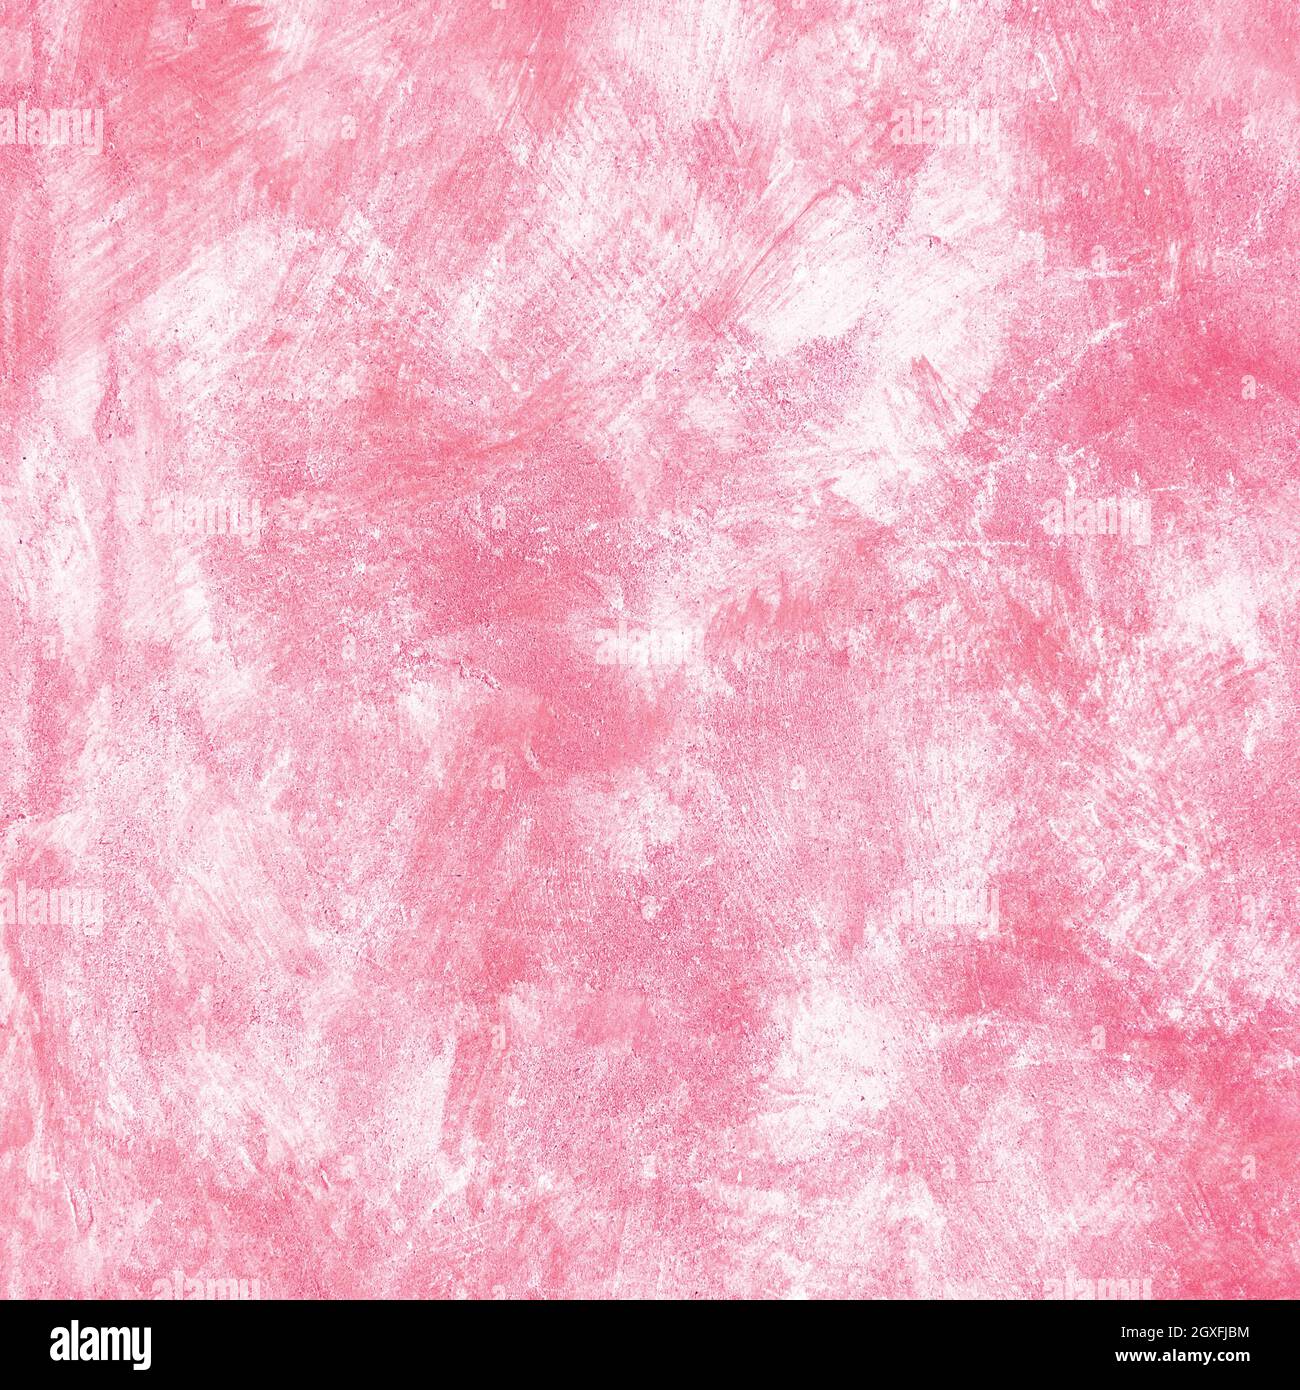 Fond de mur rose. Peinture dessinée à la main. Peinture sur mur. Texture de couleur rose. Fragment d'illustration. Coups de pinceau. Art moderne contemporain Banque D'Images